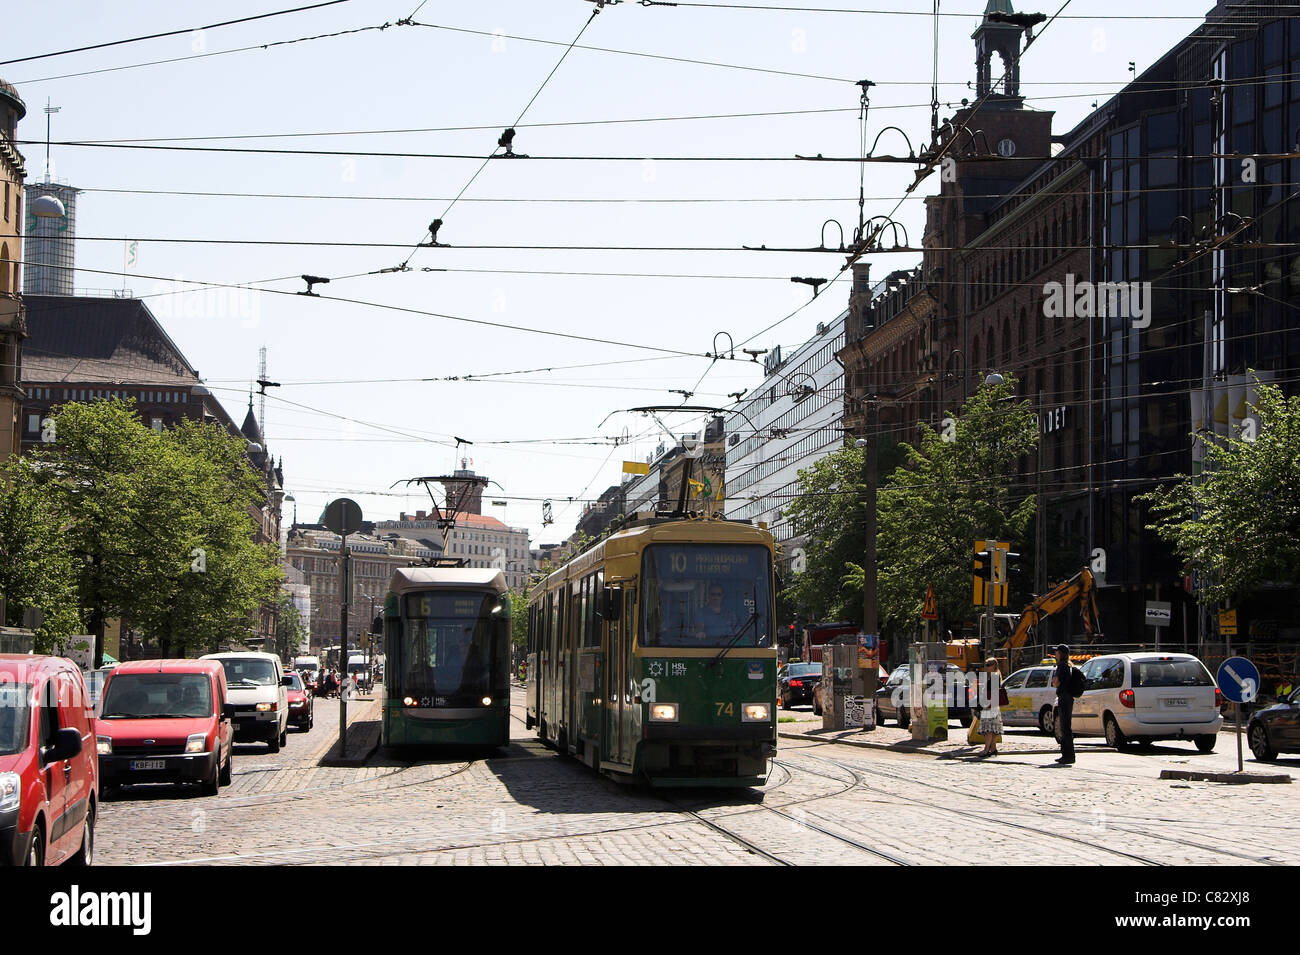 Strada trafficata scena con una fermata del tram e il traffico, Helsinki, Finlandia Foto Stock